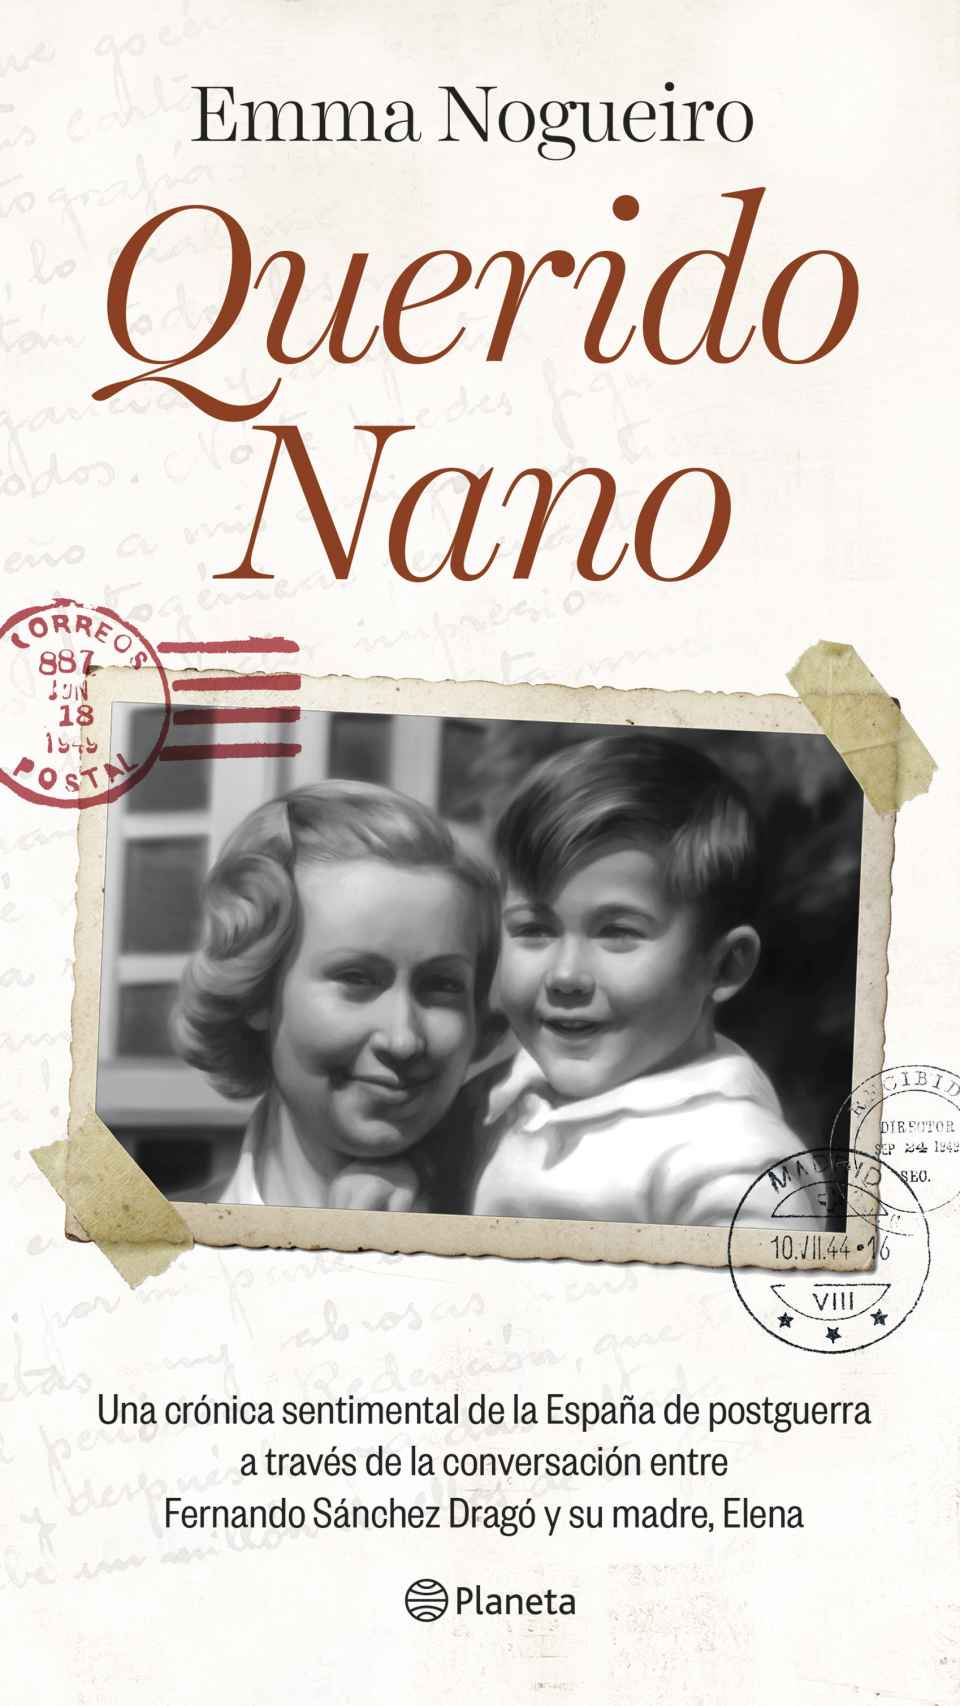 La portada del libro 'Querido Nano', que sale a la venta el 17 de abril.